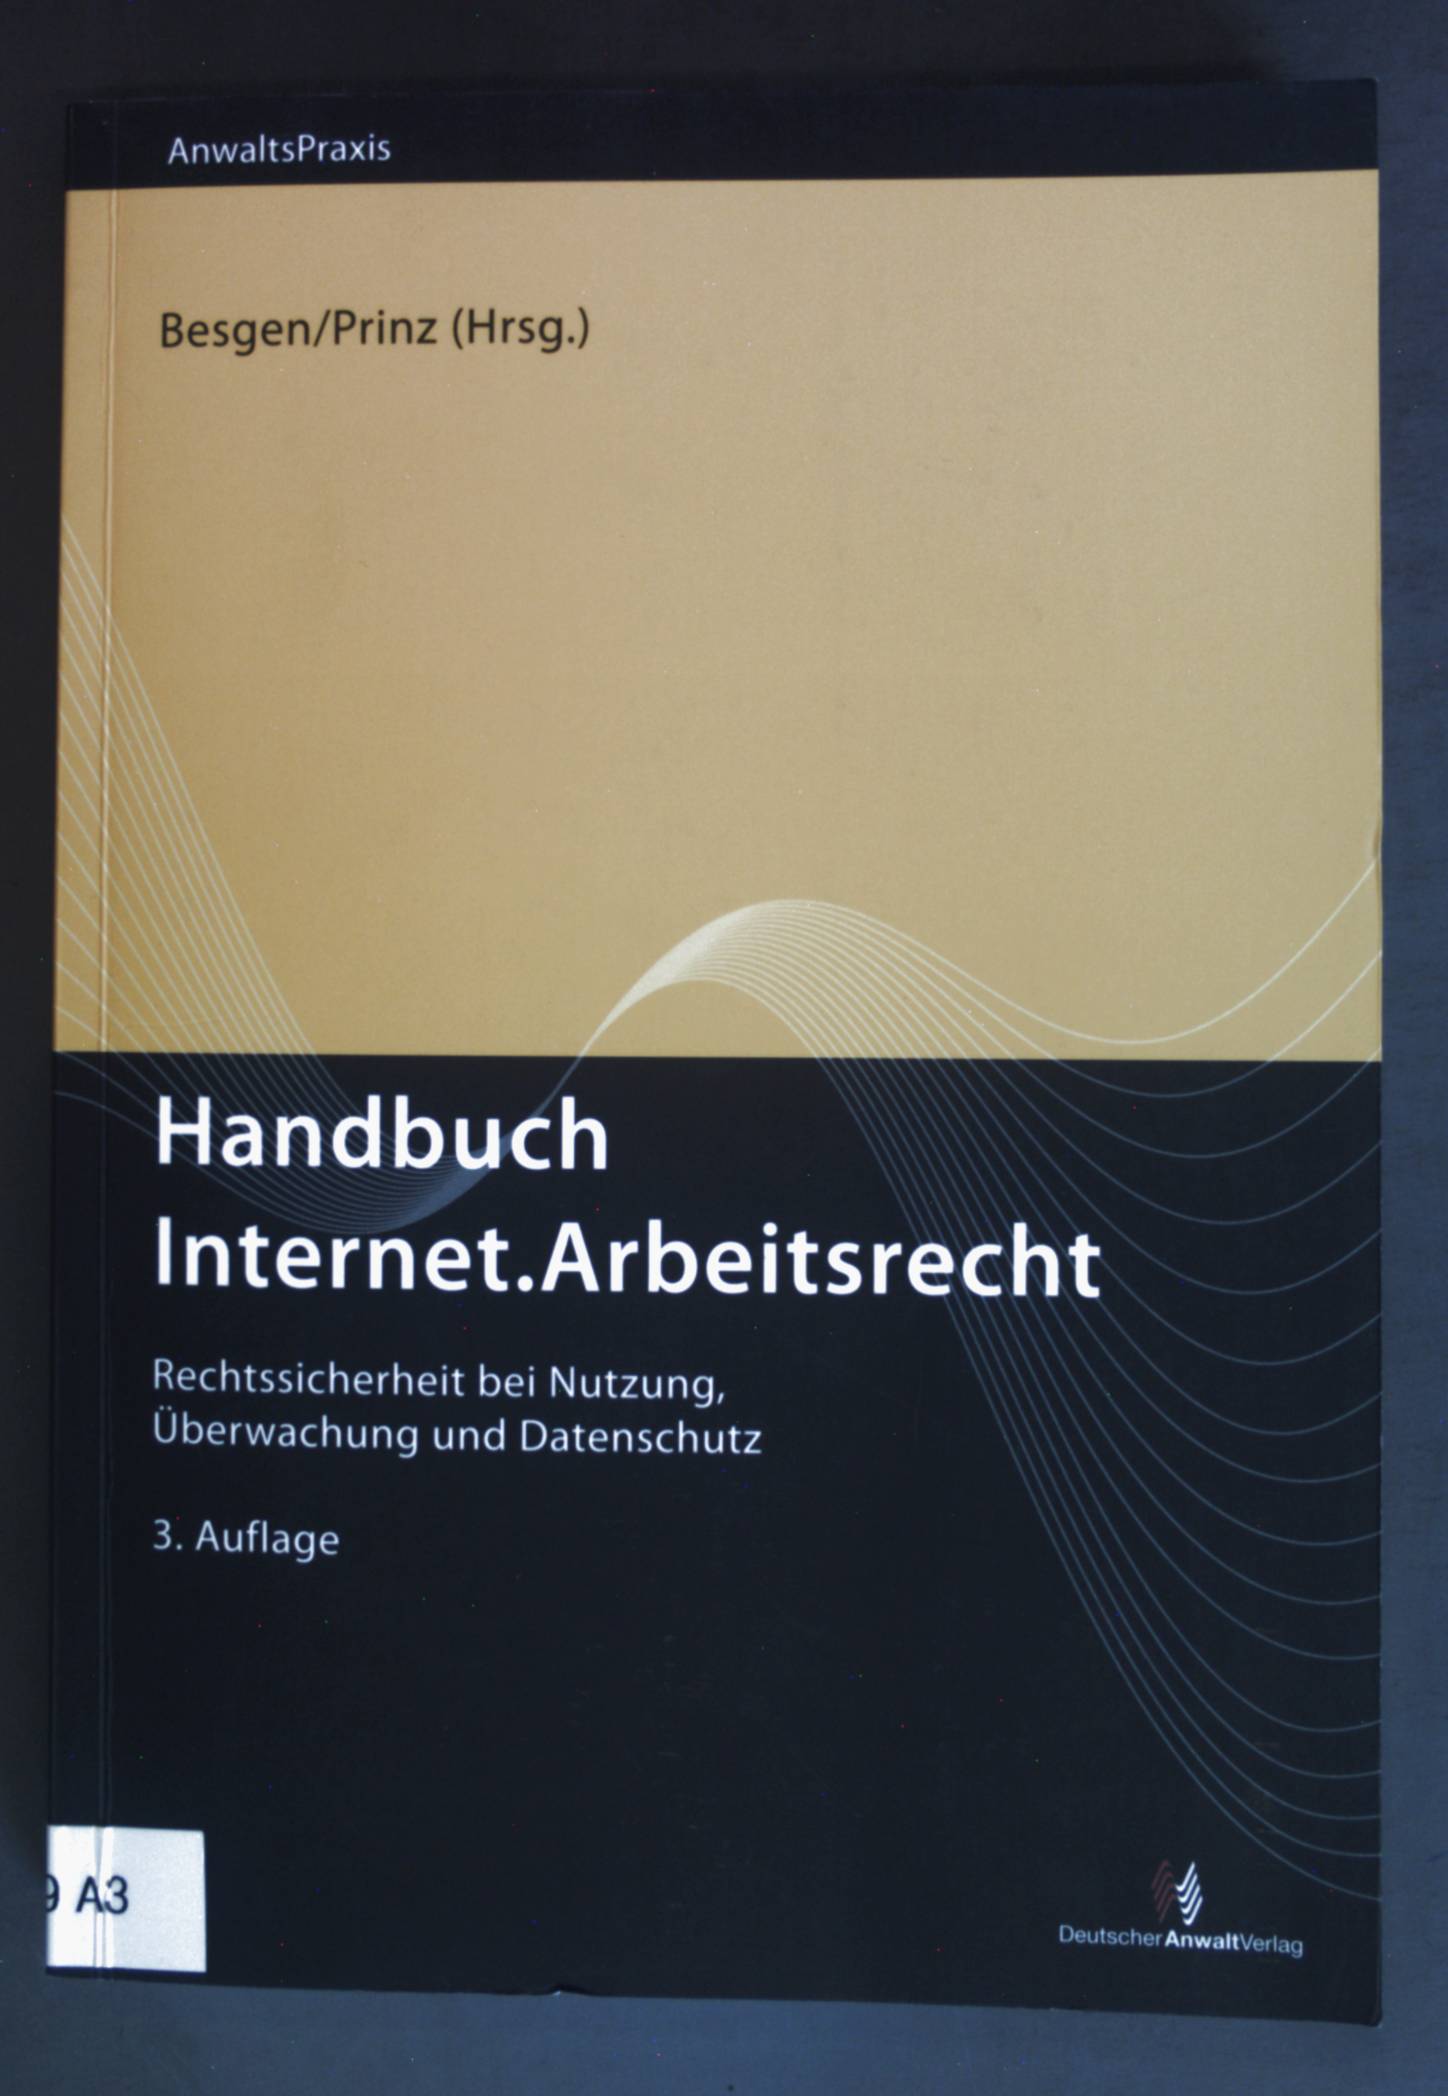 Handbuch Internet.Arbeitsrecht : Rechtssicherheit bei Nutzung, Überwachung und Datenschutz. AnwaltsPraxis - Besgen, Nicolai und Thomas Prinz